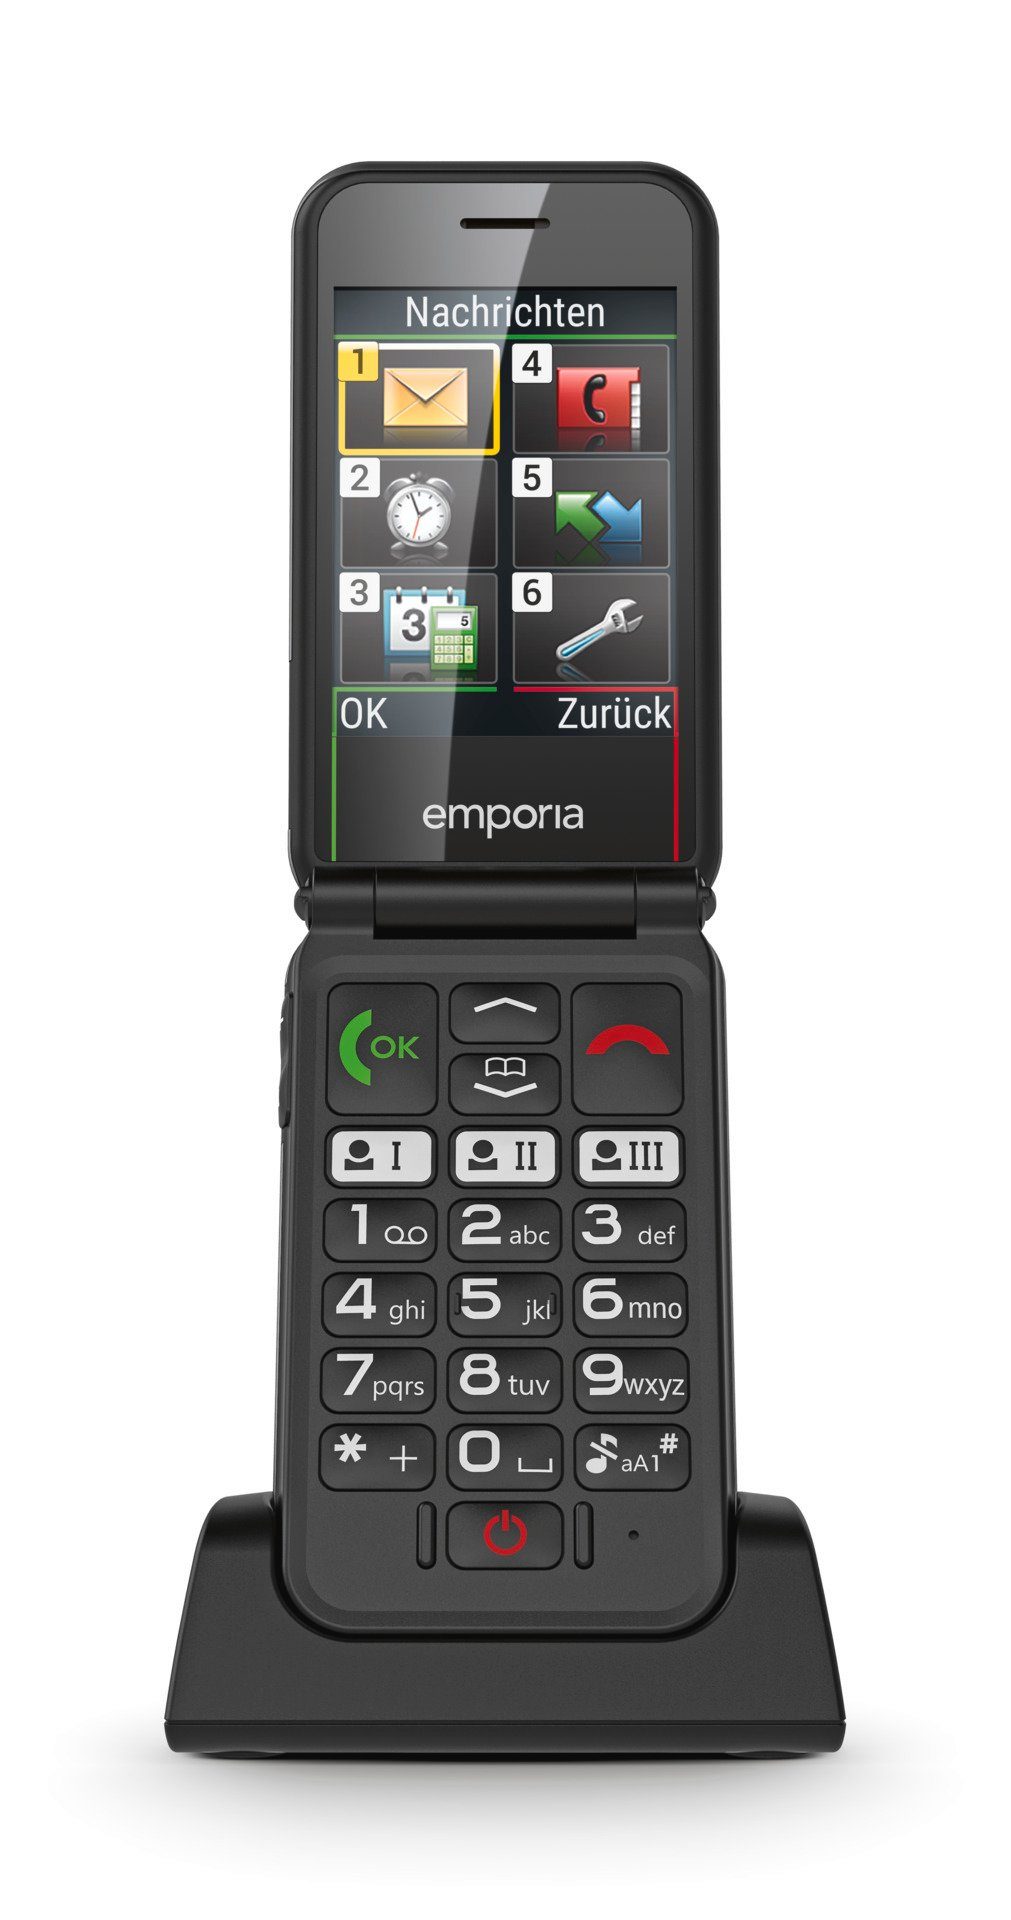 Speicherplatz) Emporia SIMPLICITY GB Smartphone cm/2,8 V227-2G 0,064 Zoll, (7,1